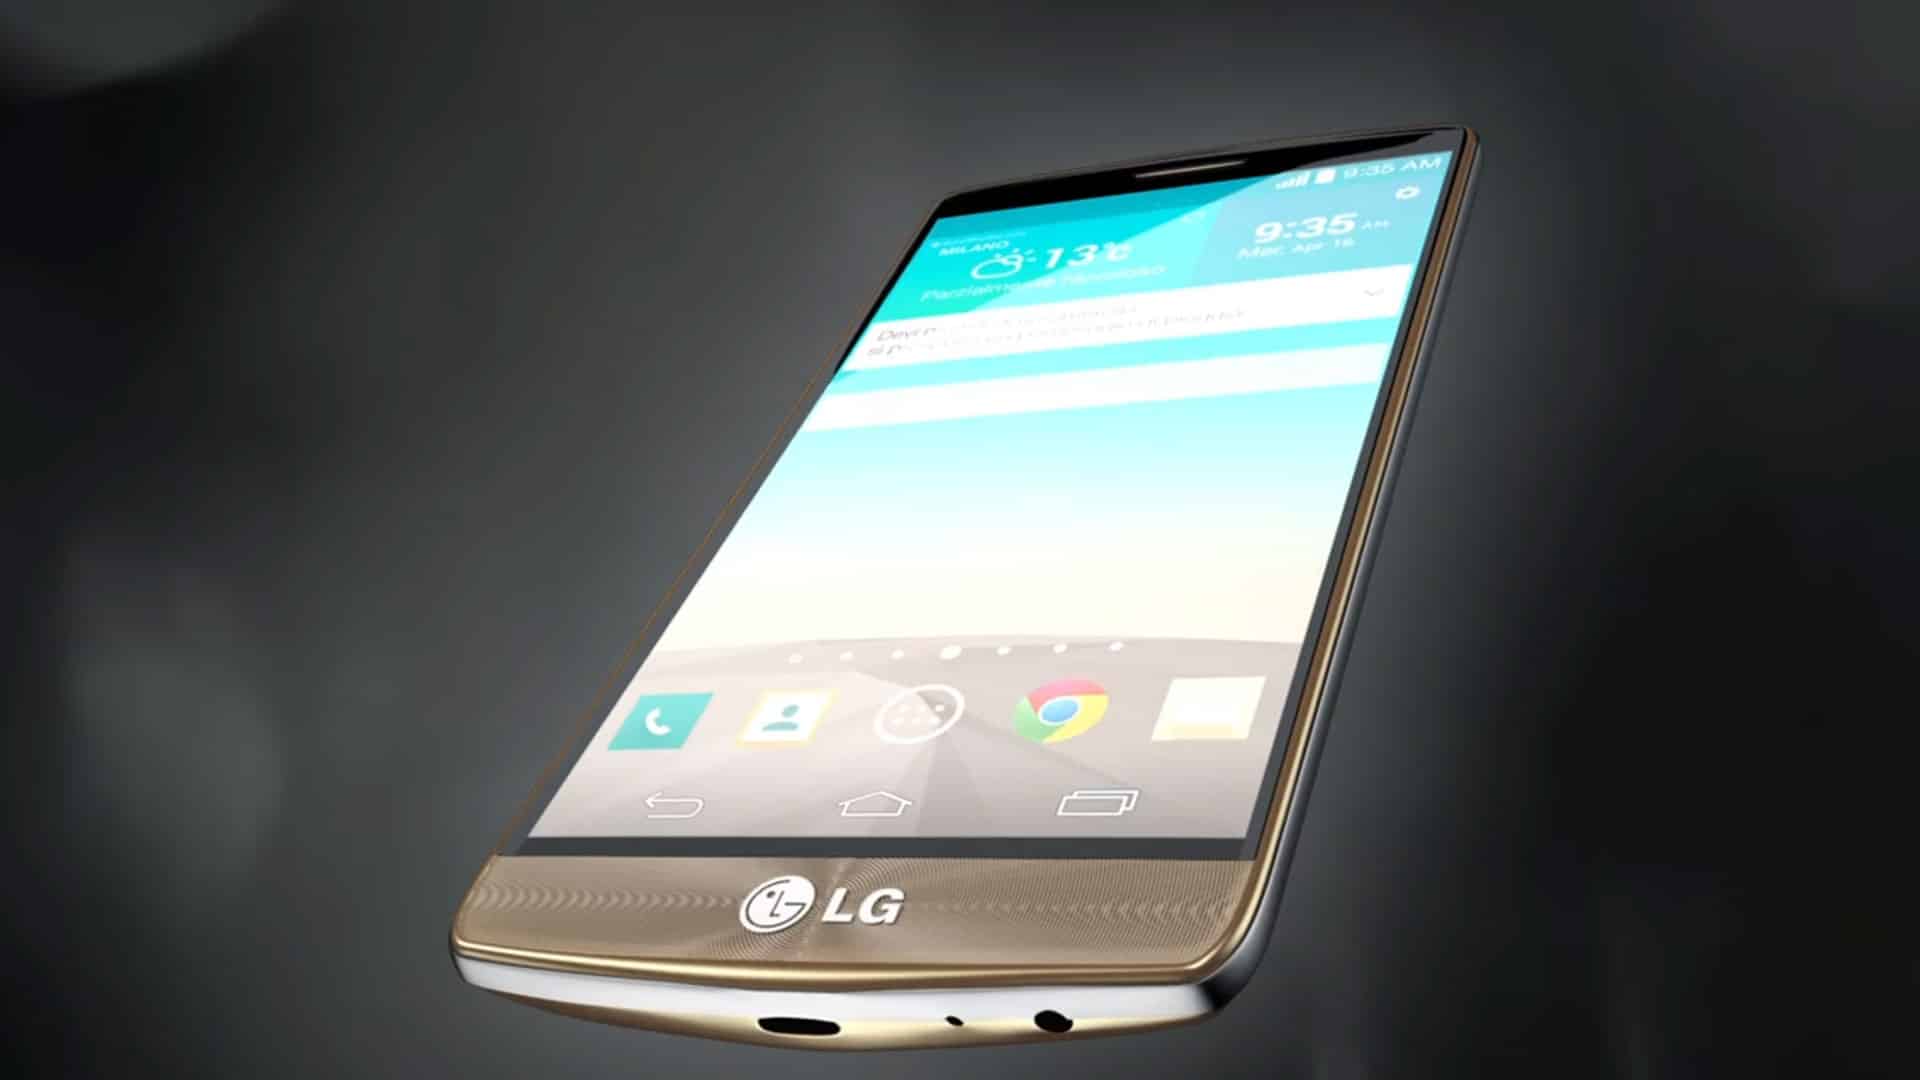 Presentazione LG G3 - Video 3D